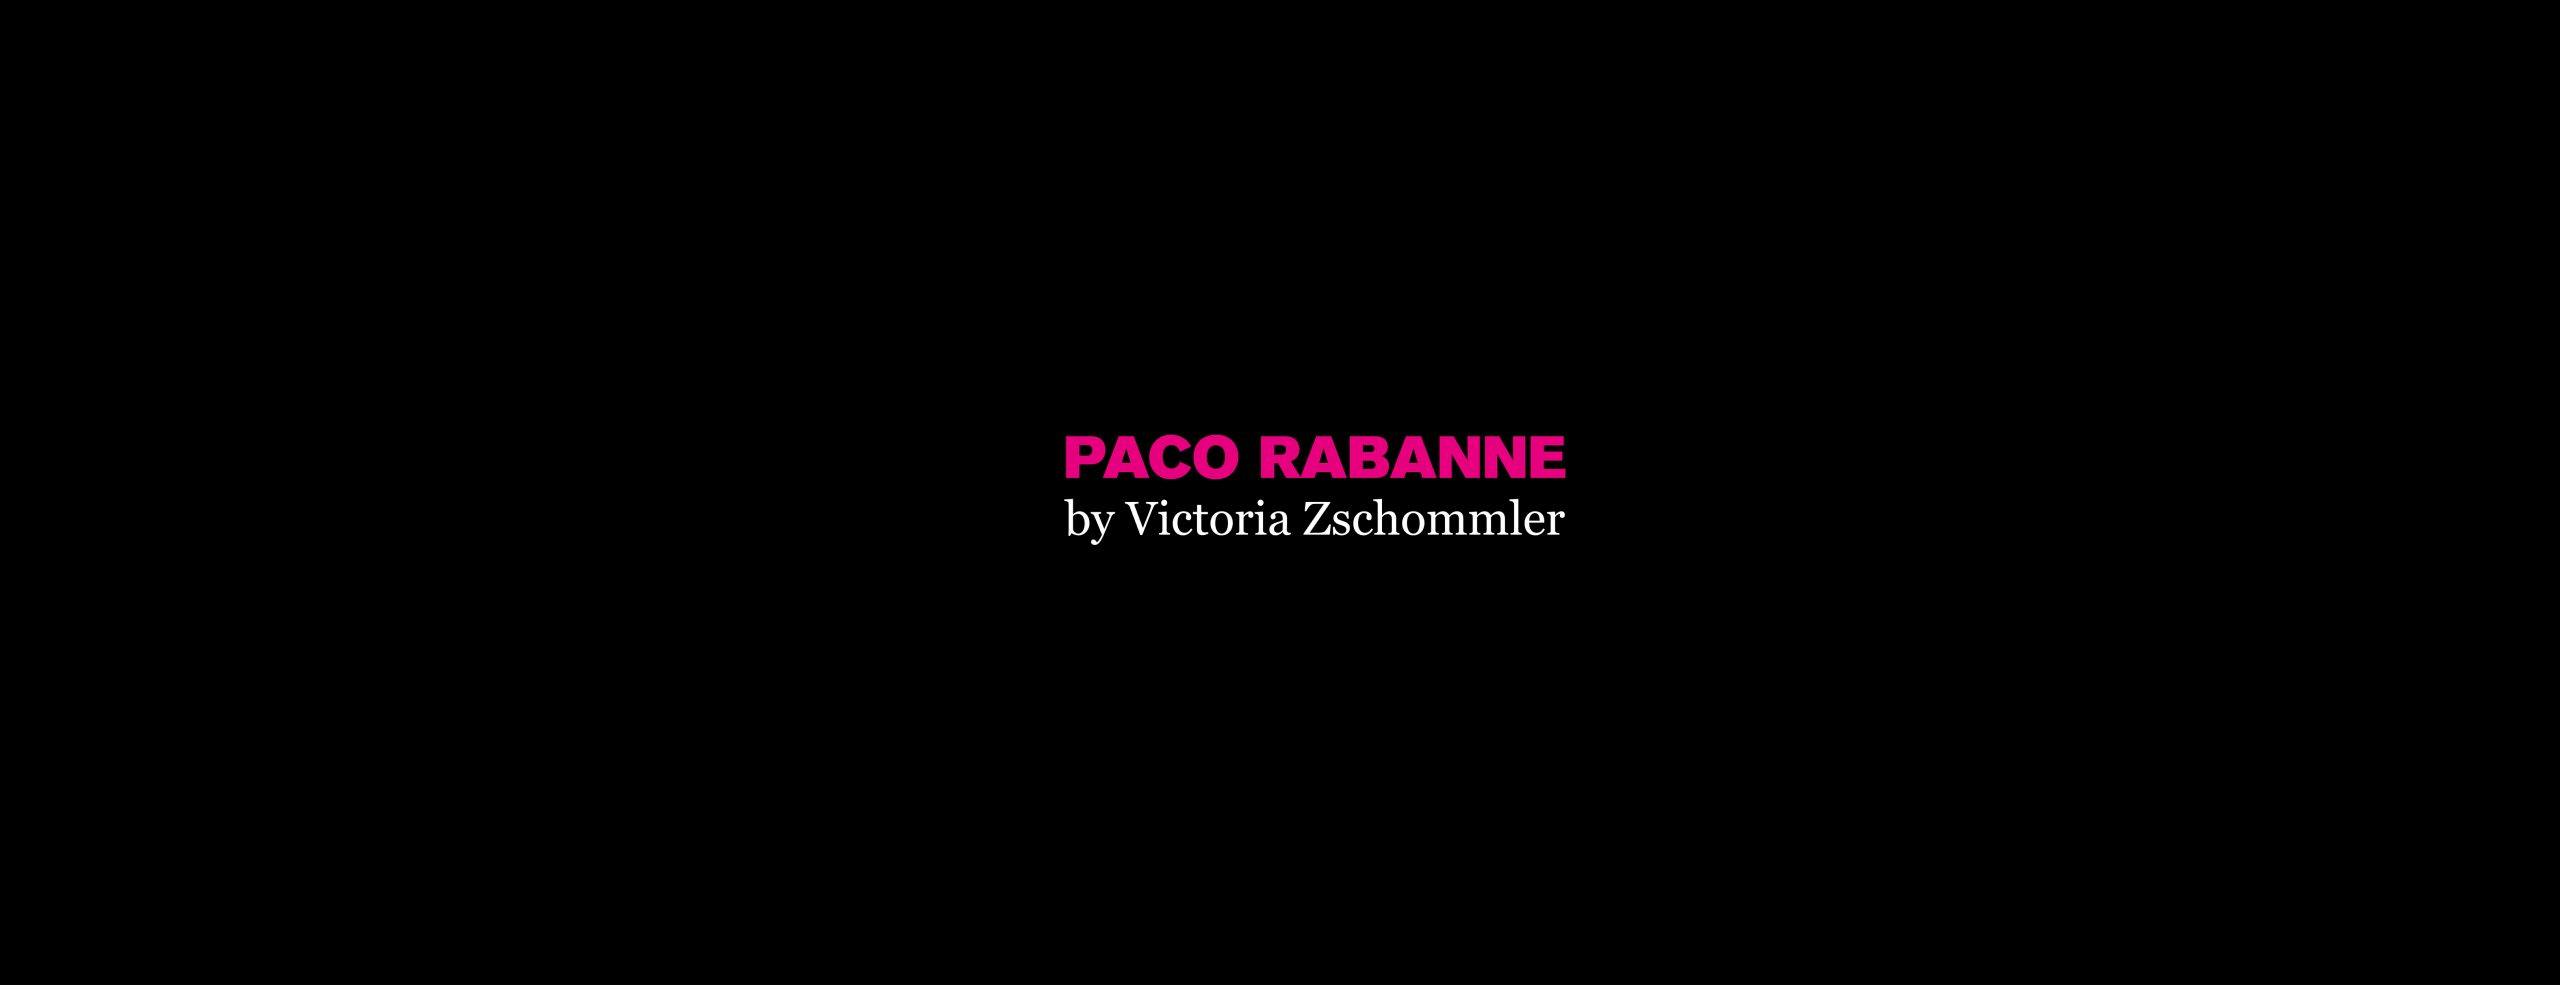 Paco Rabanne by Victoria Zschommler